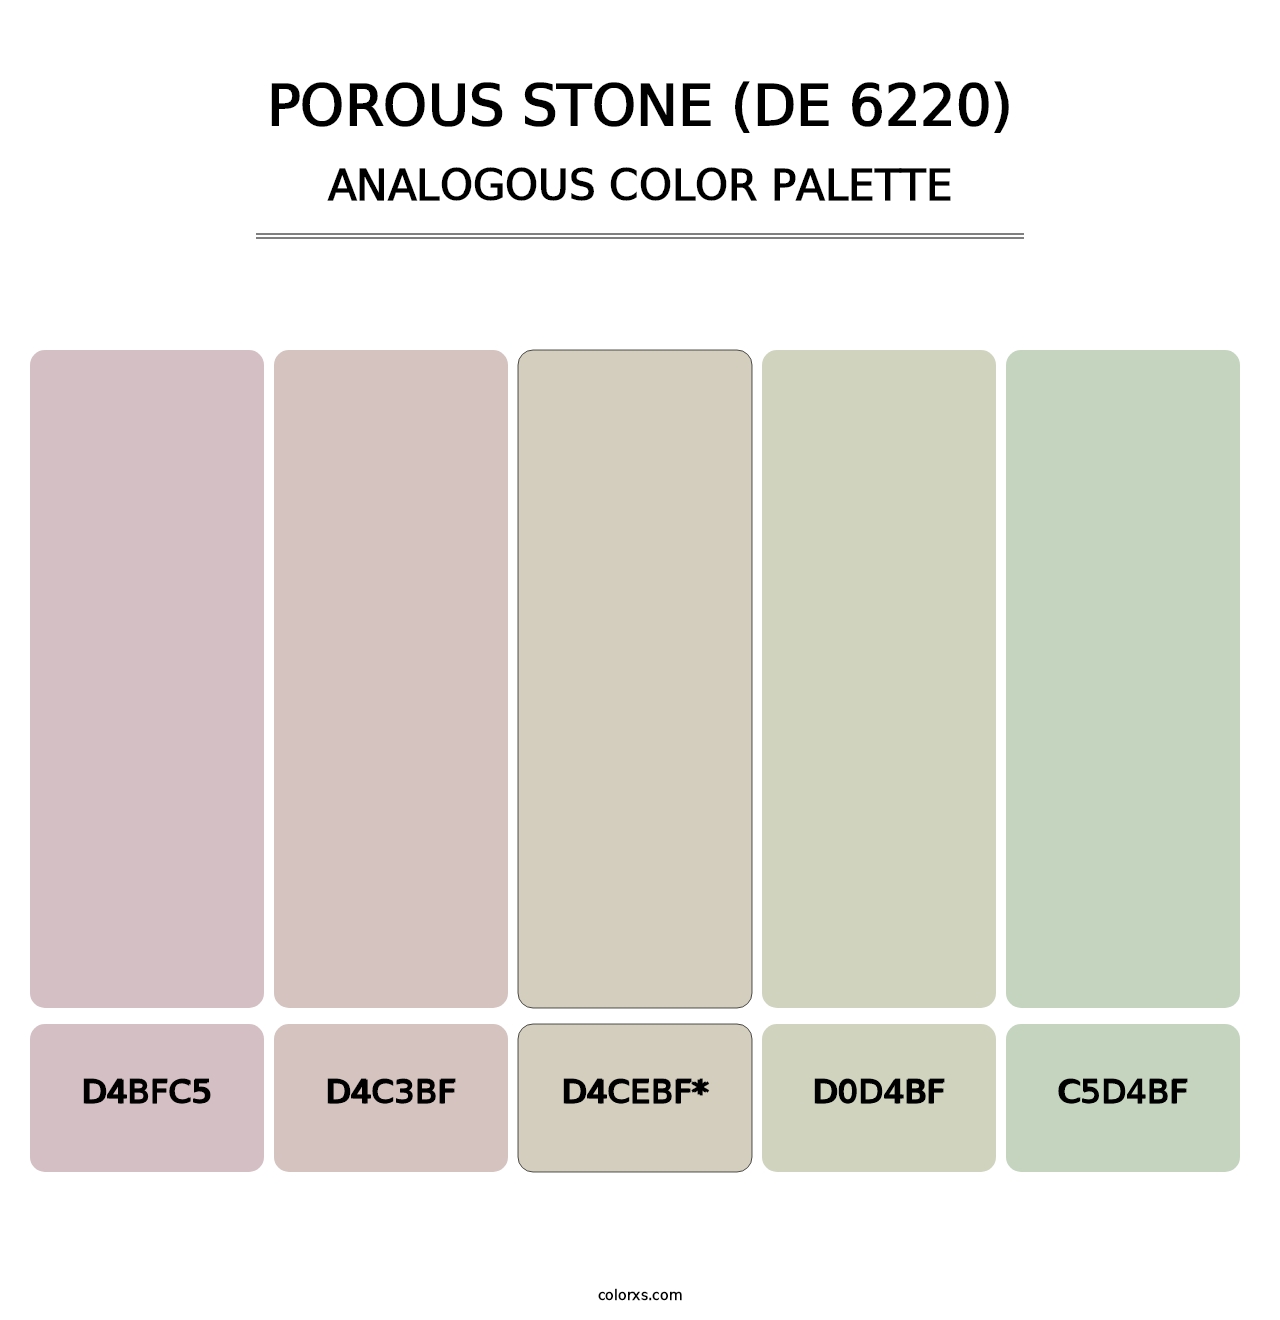 Porous Stone (DE 6220) - Analogous Color Palette